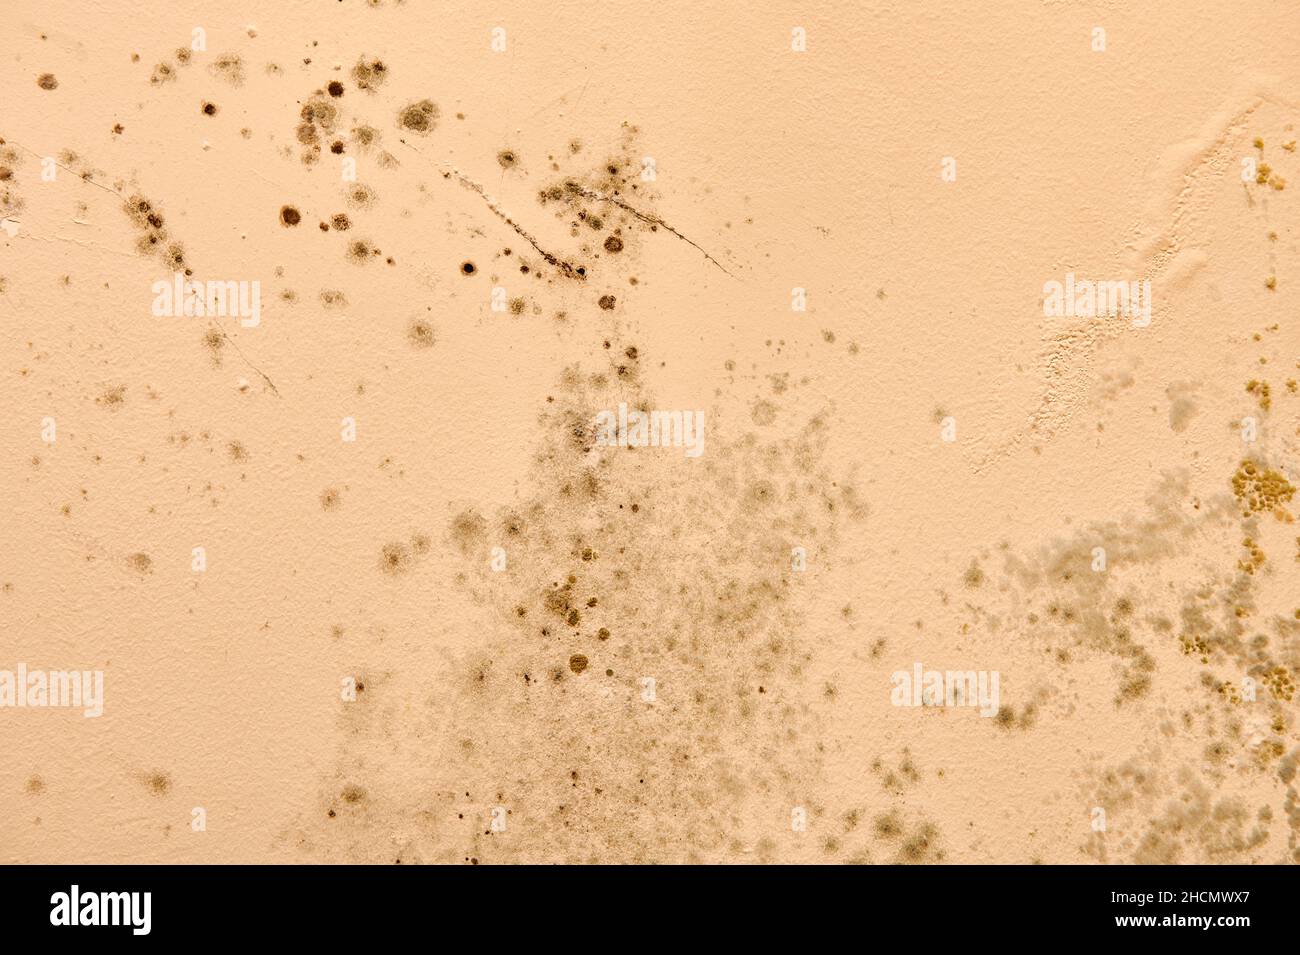 Une humidité excessive provoque la moisissure et l'écaillage des murs de peinture, comme des fuites d'eau de pluie. Banque D'Images